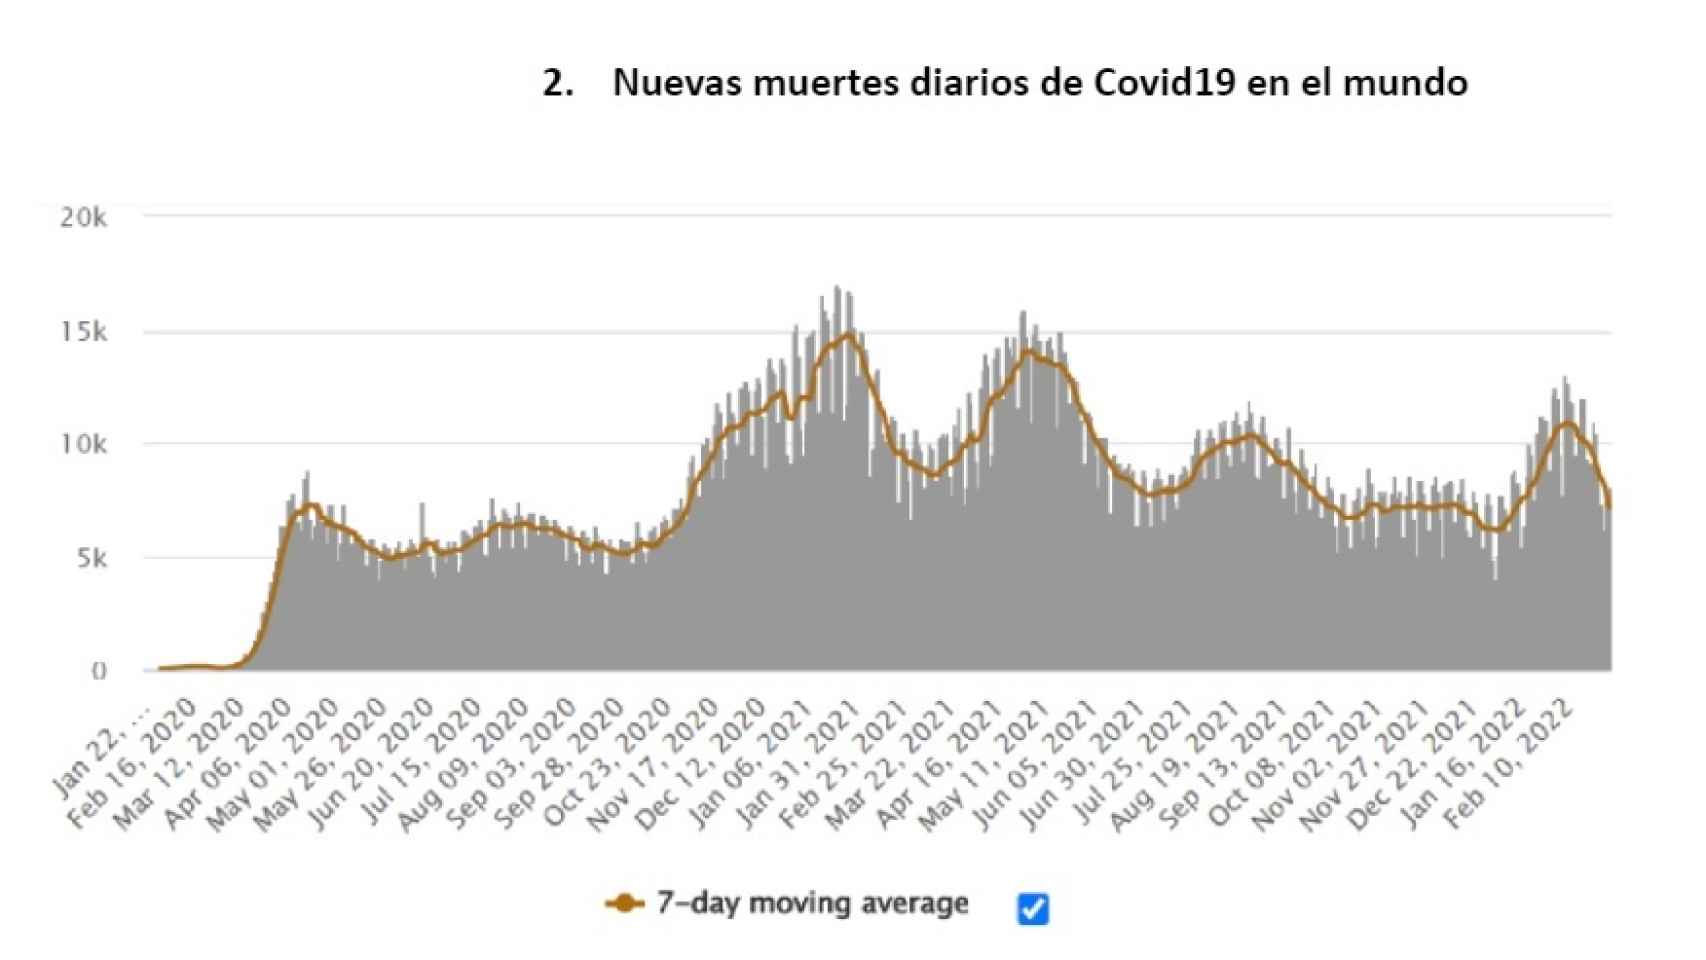 Nuevas muertes diarios de Covid19 en el mundo. Fuente: Worldometers.